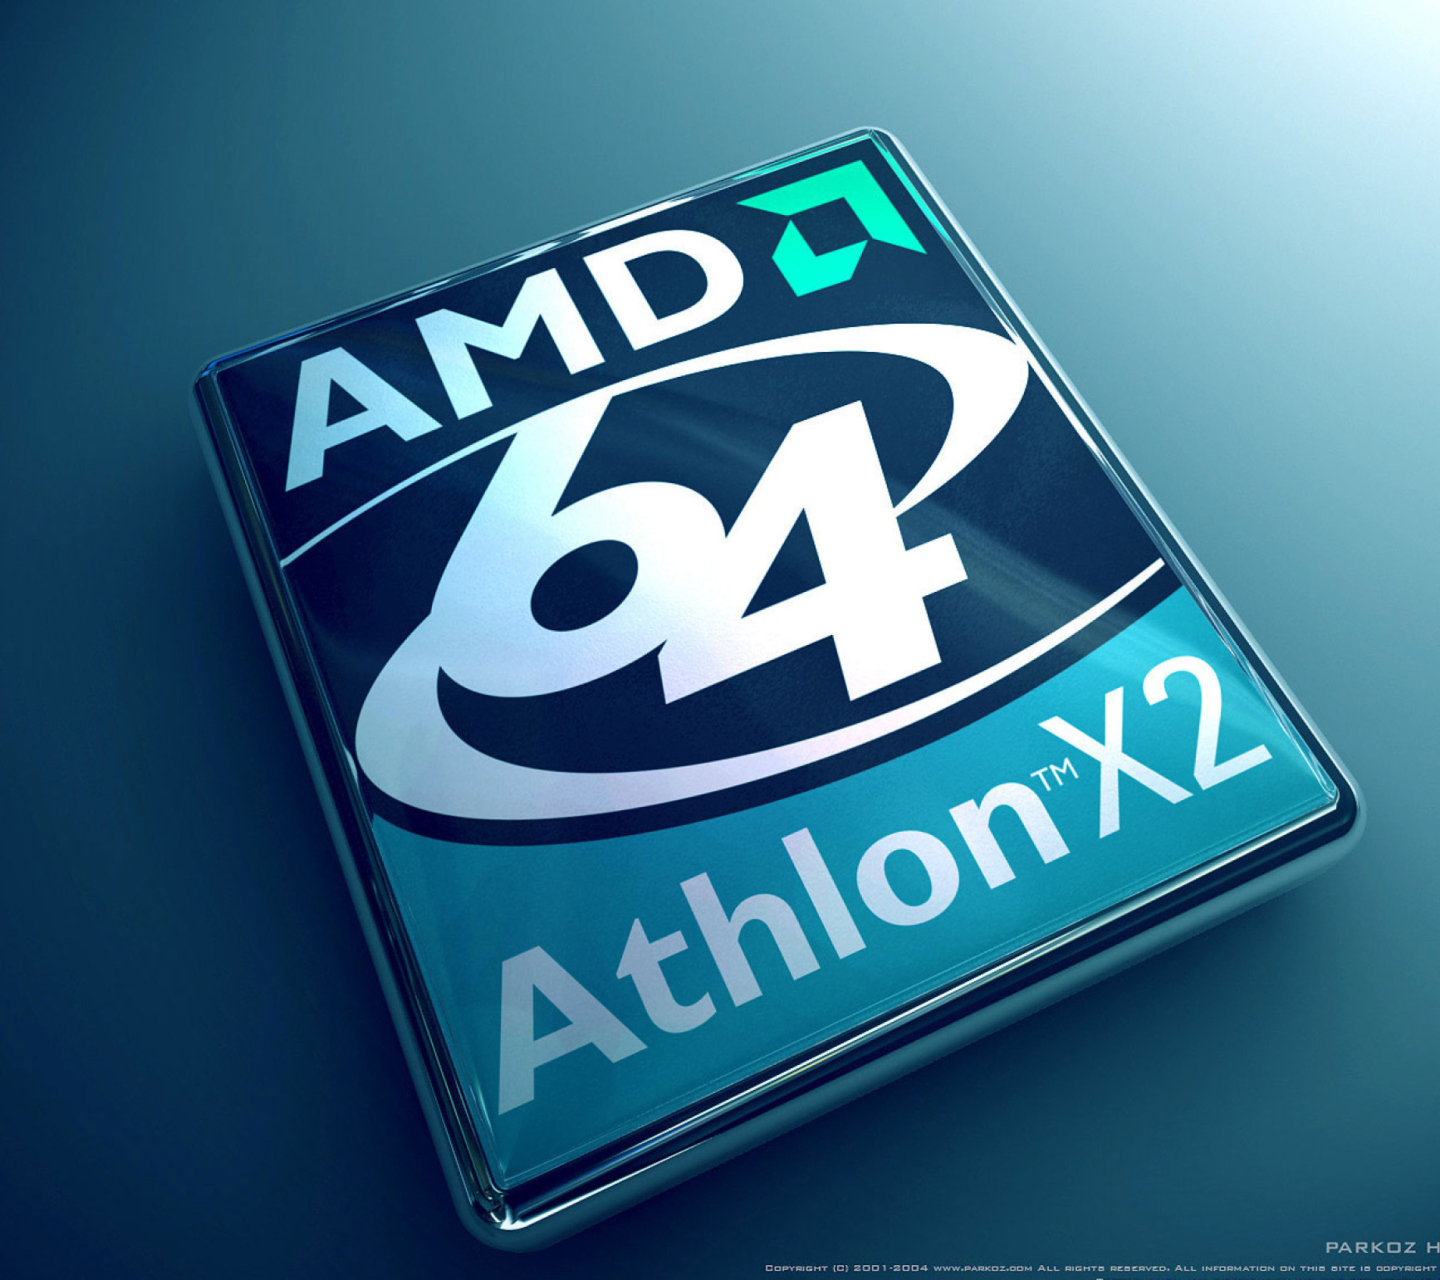 Sfondi AMD Athlon 64 X2 1440x1280